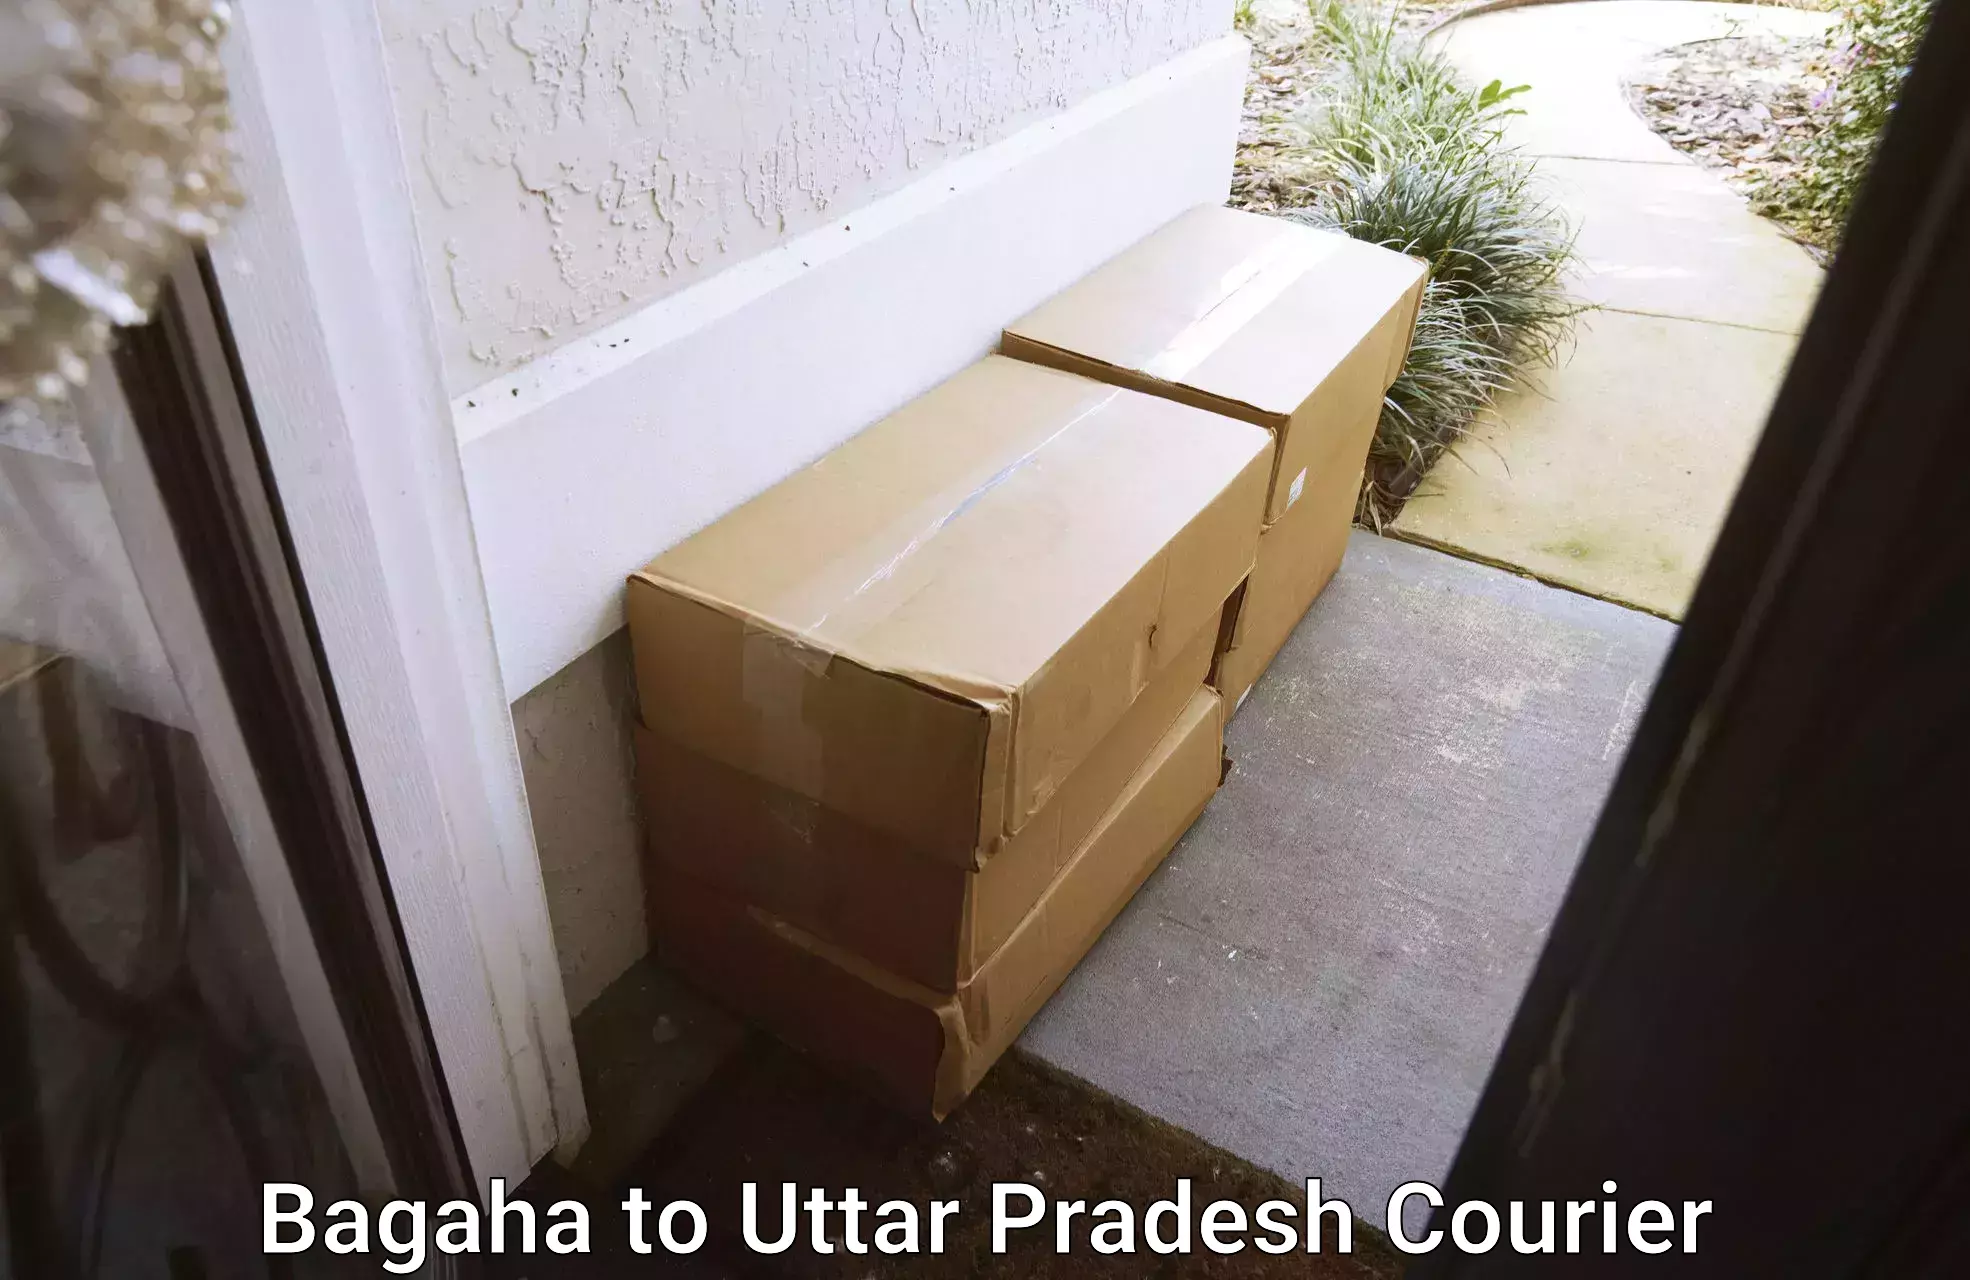 Furniture moving plans in Bagaha to Badlapur